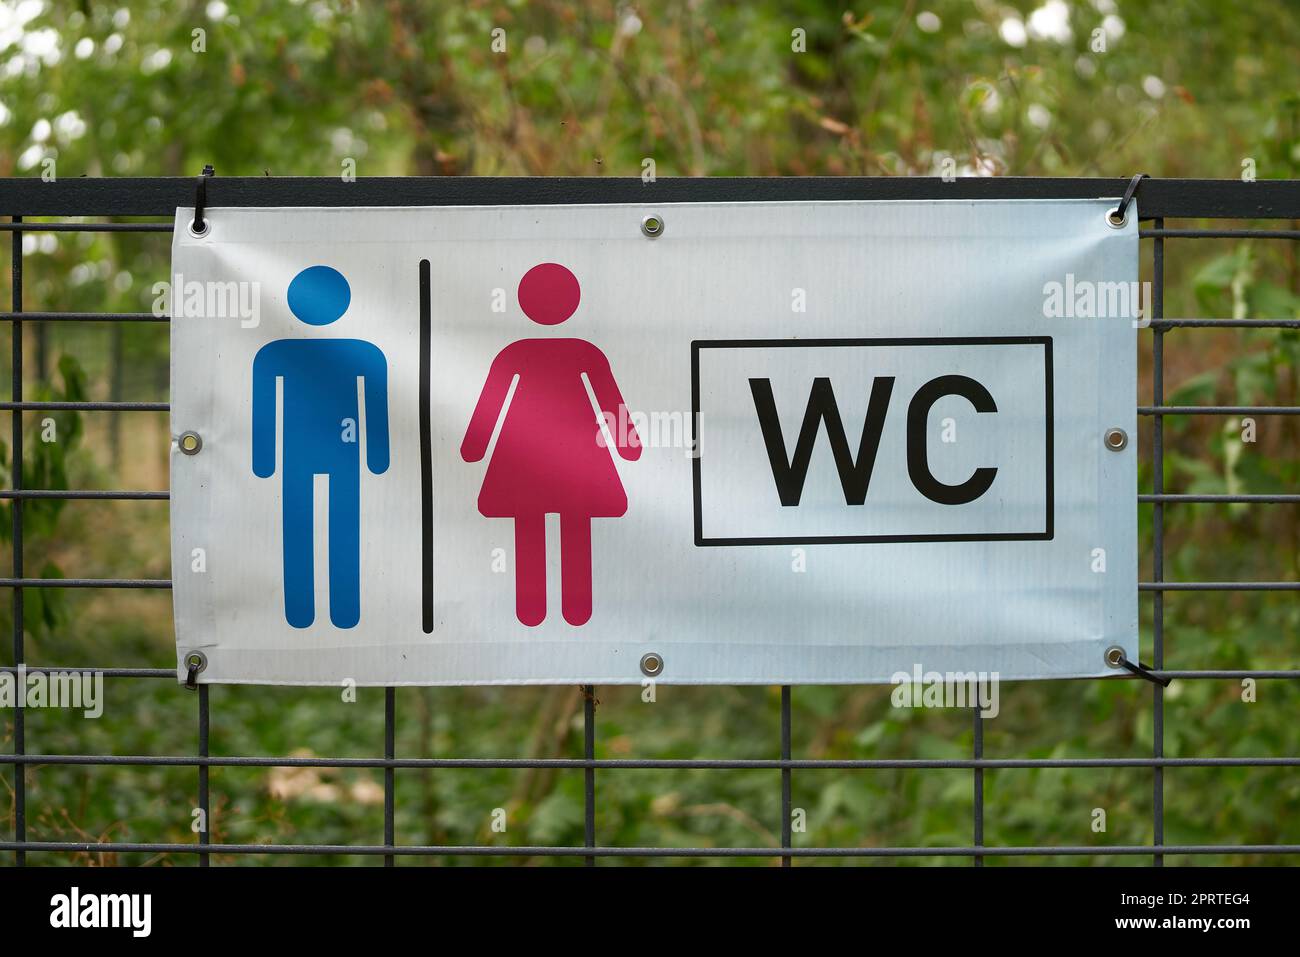 Hinweis auf eine Toilette in der Nähe durch ein Schild an einem Zaun in einem Park in Deutschland Stockfoto